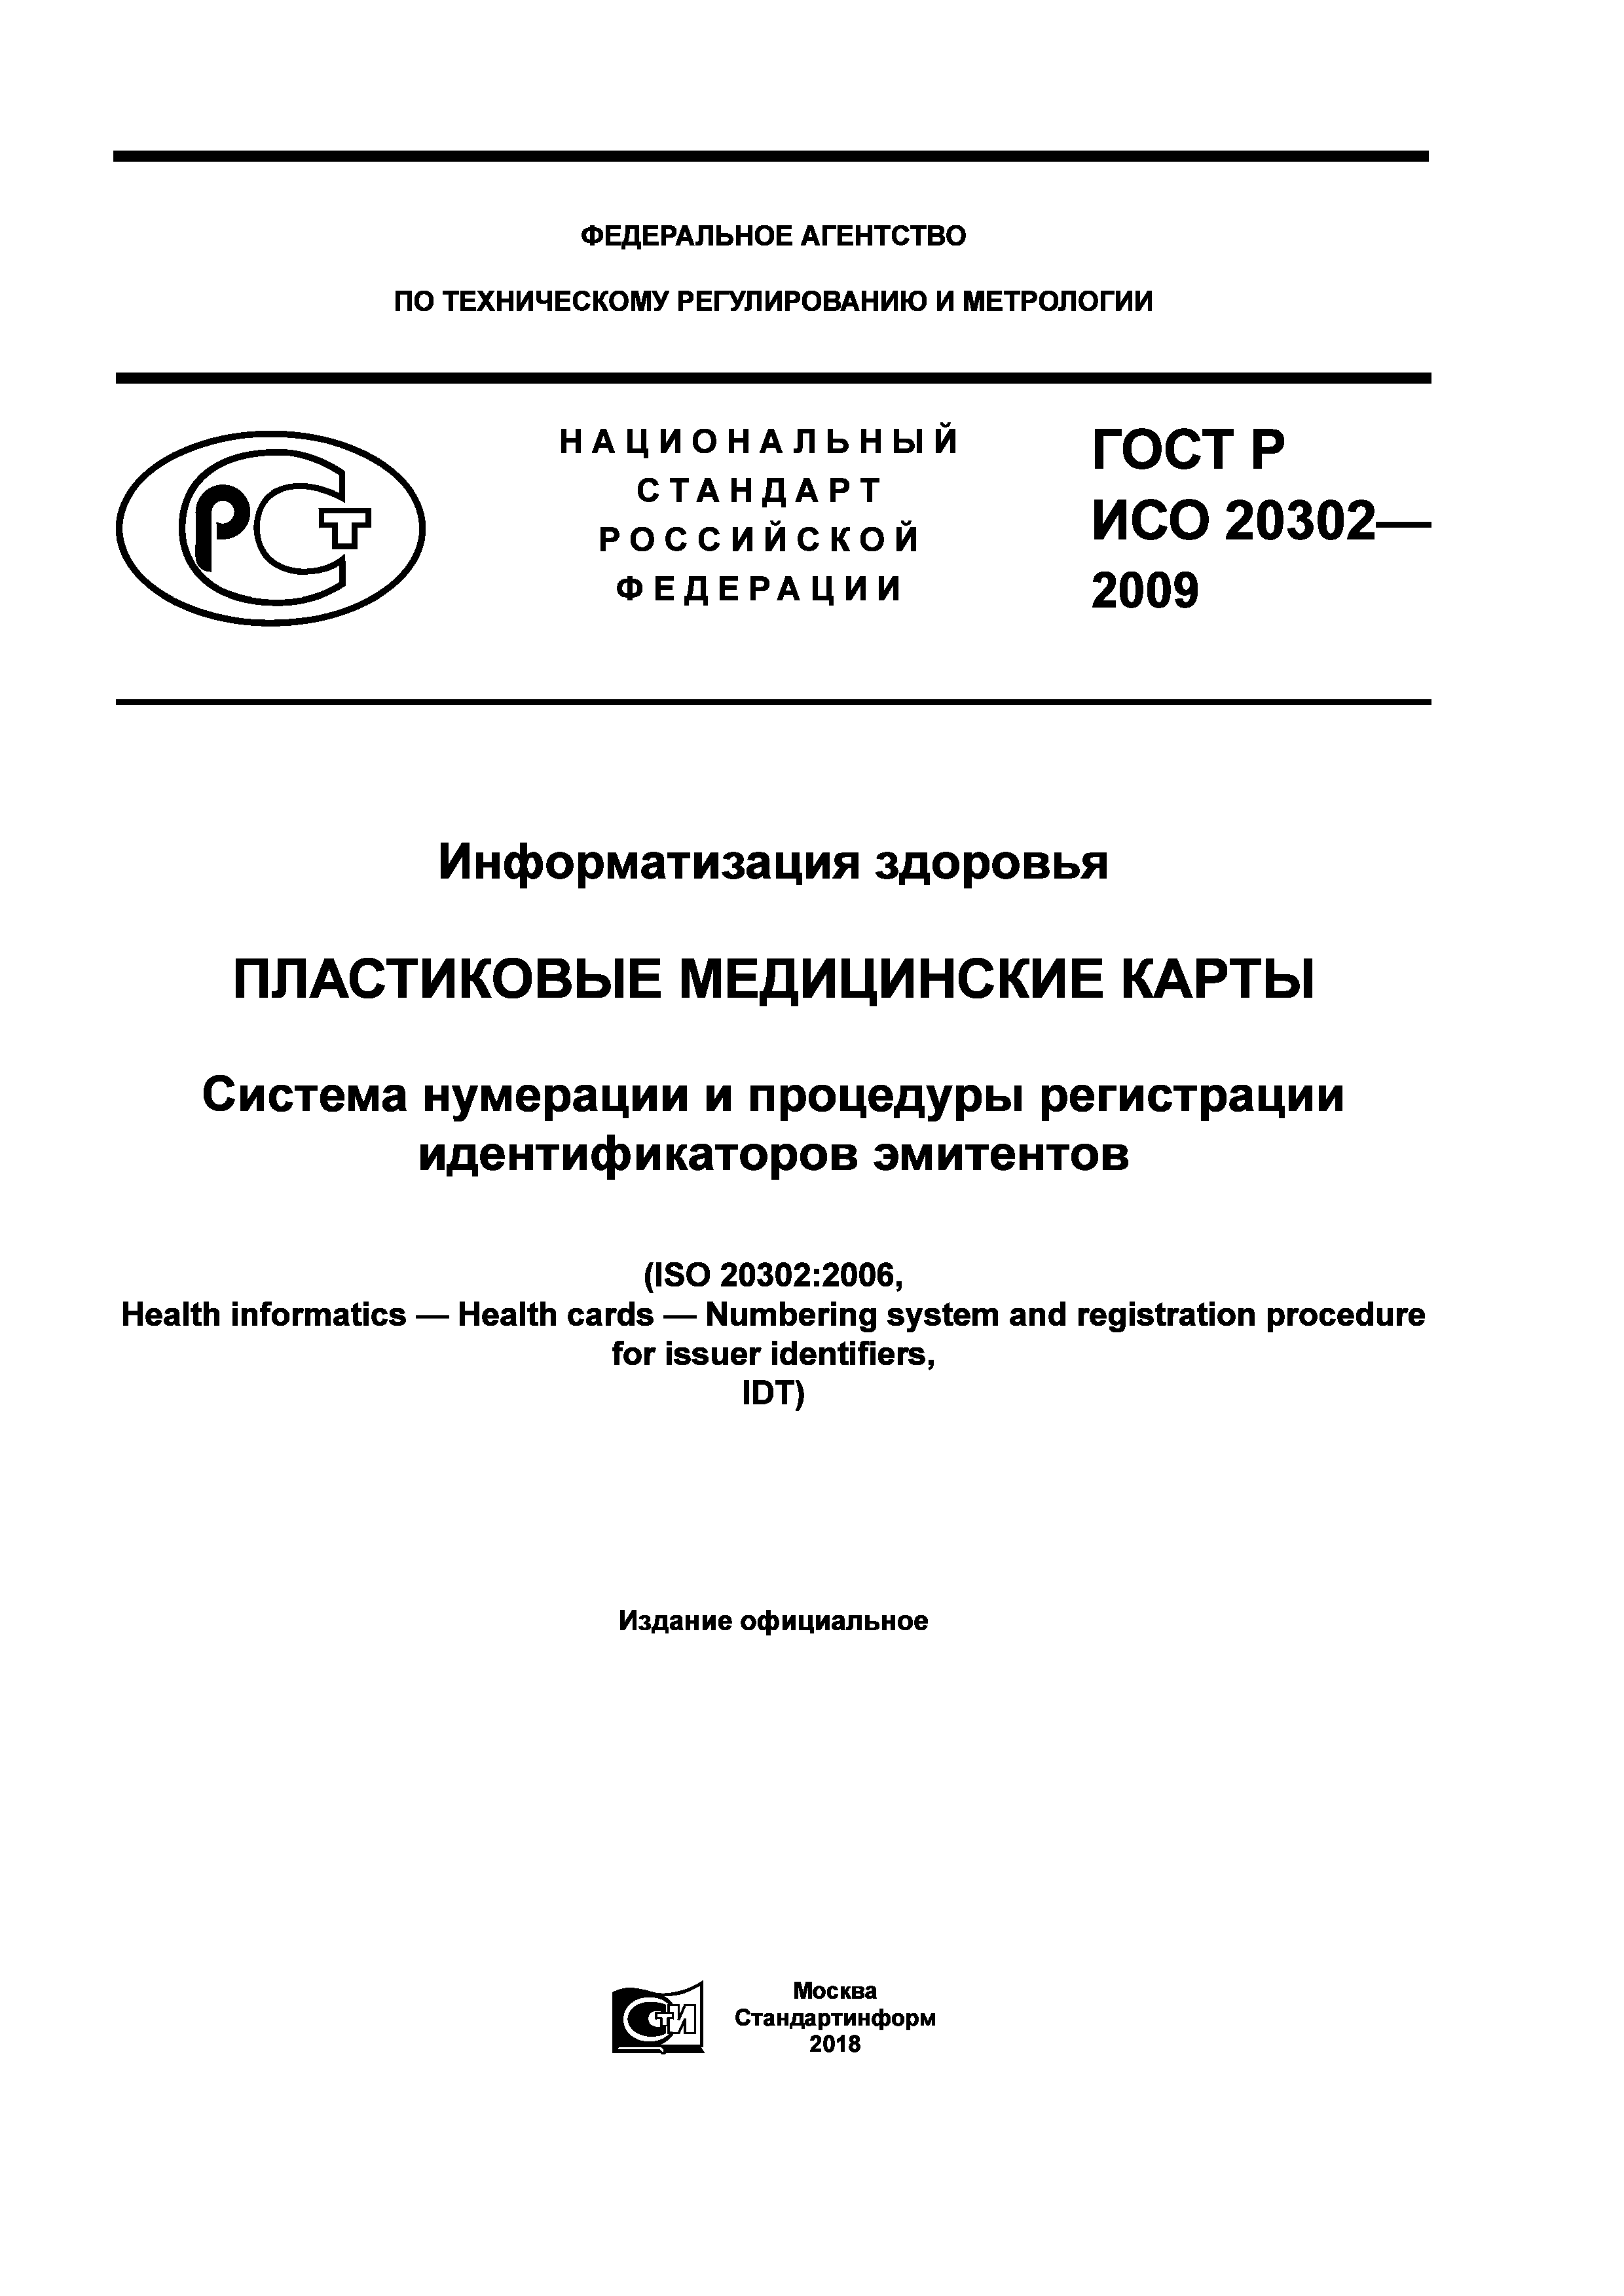 ГОСТ Р ИСО 20302-2009